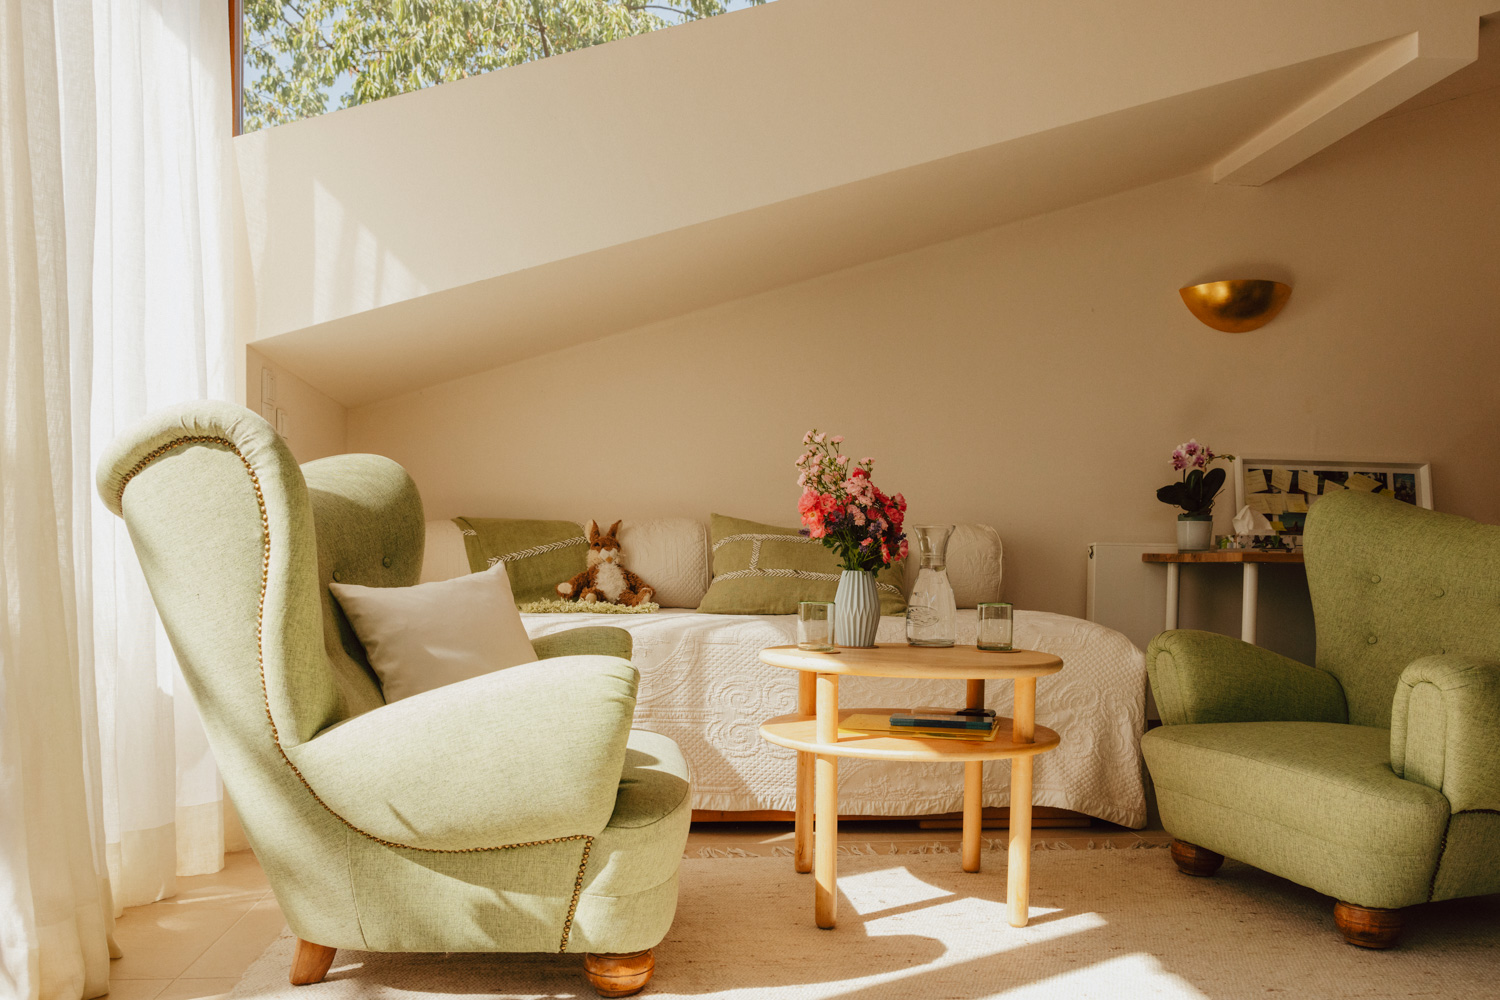 Aufnahme eines Raumes mit großen grünen Ohrensesseln, einer weißen Couch auf dem ein Kuschelhase sitzt und einem runden Holztisch mit frischen rosaroten Blumen.